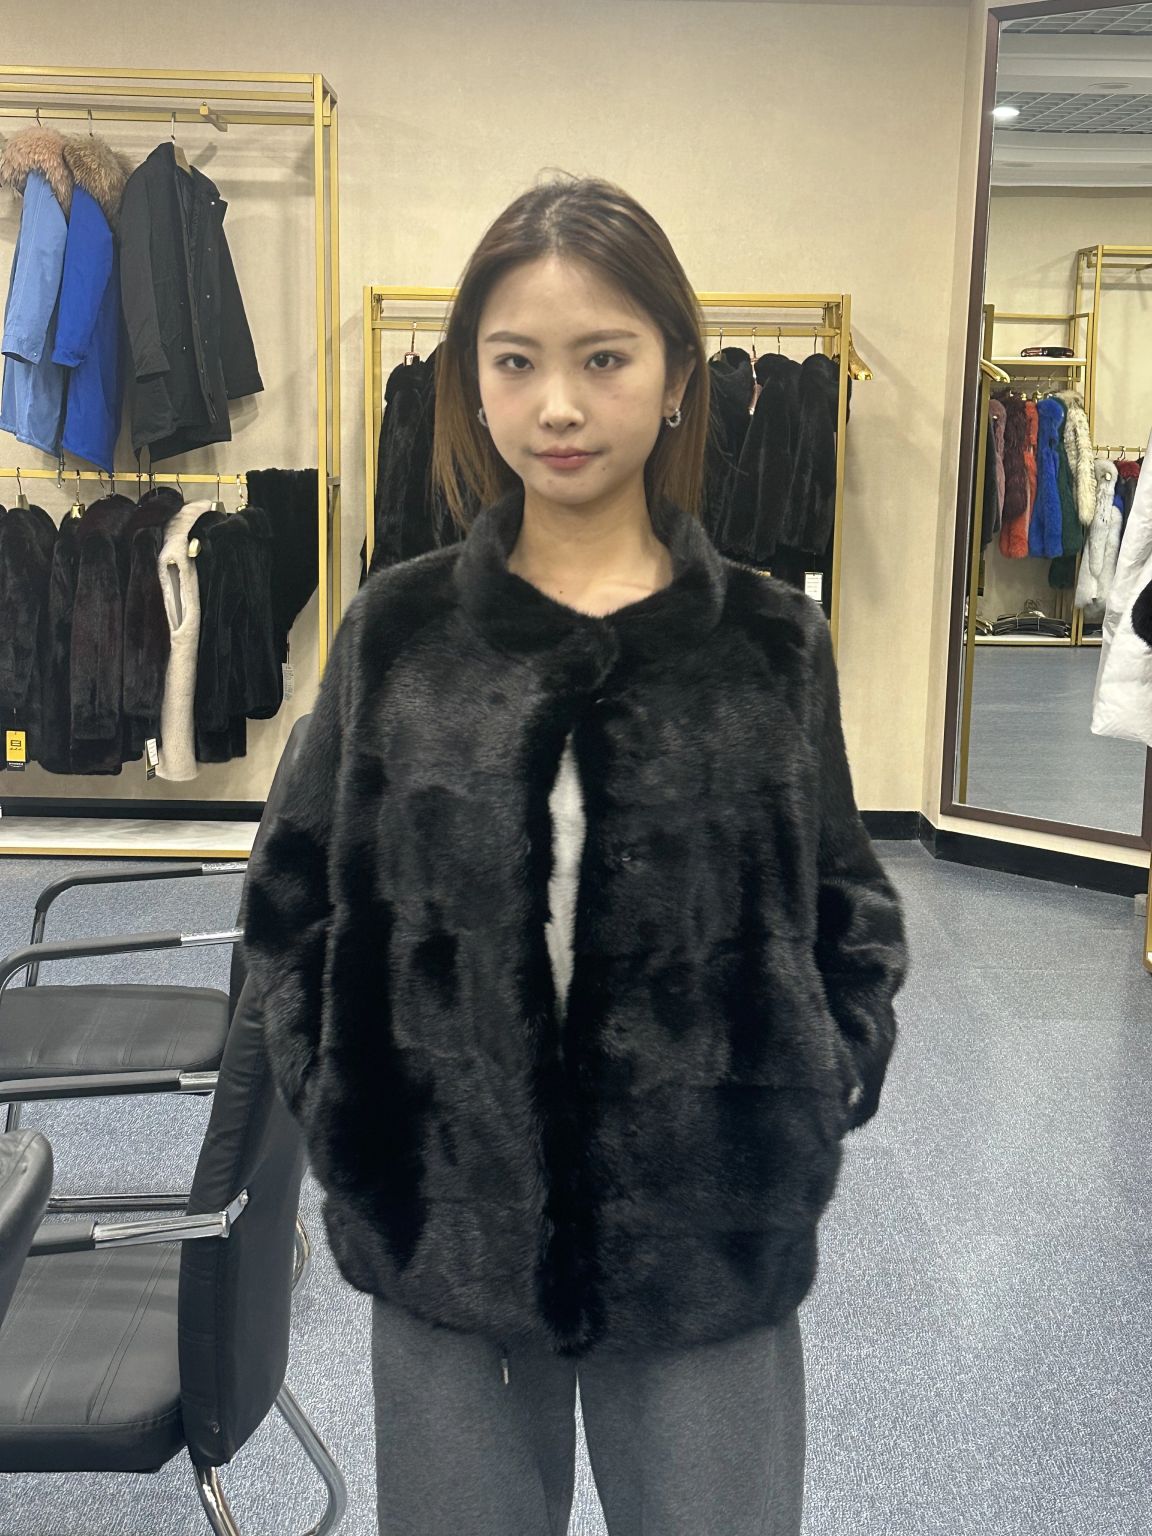 Echo Yuan on LinkedIn: mink coat